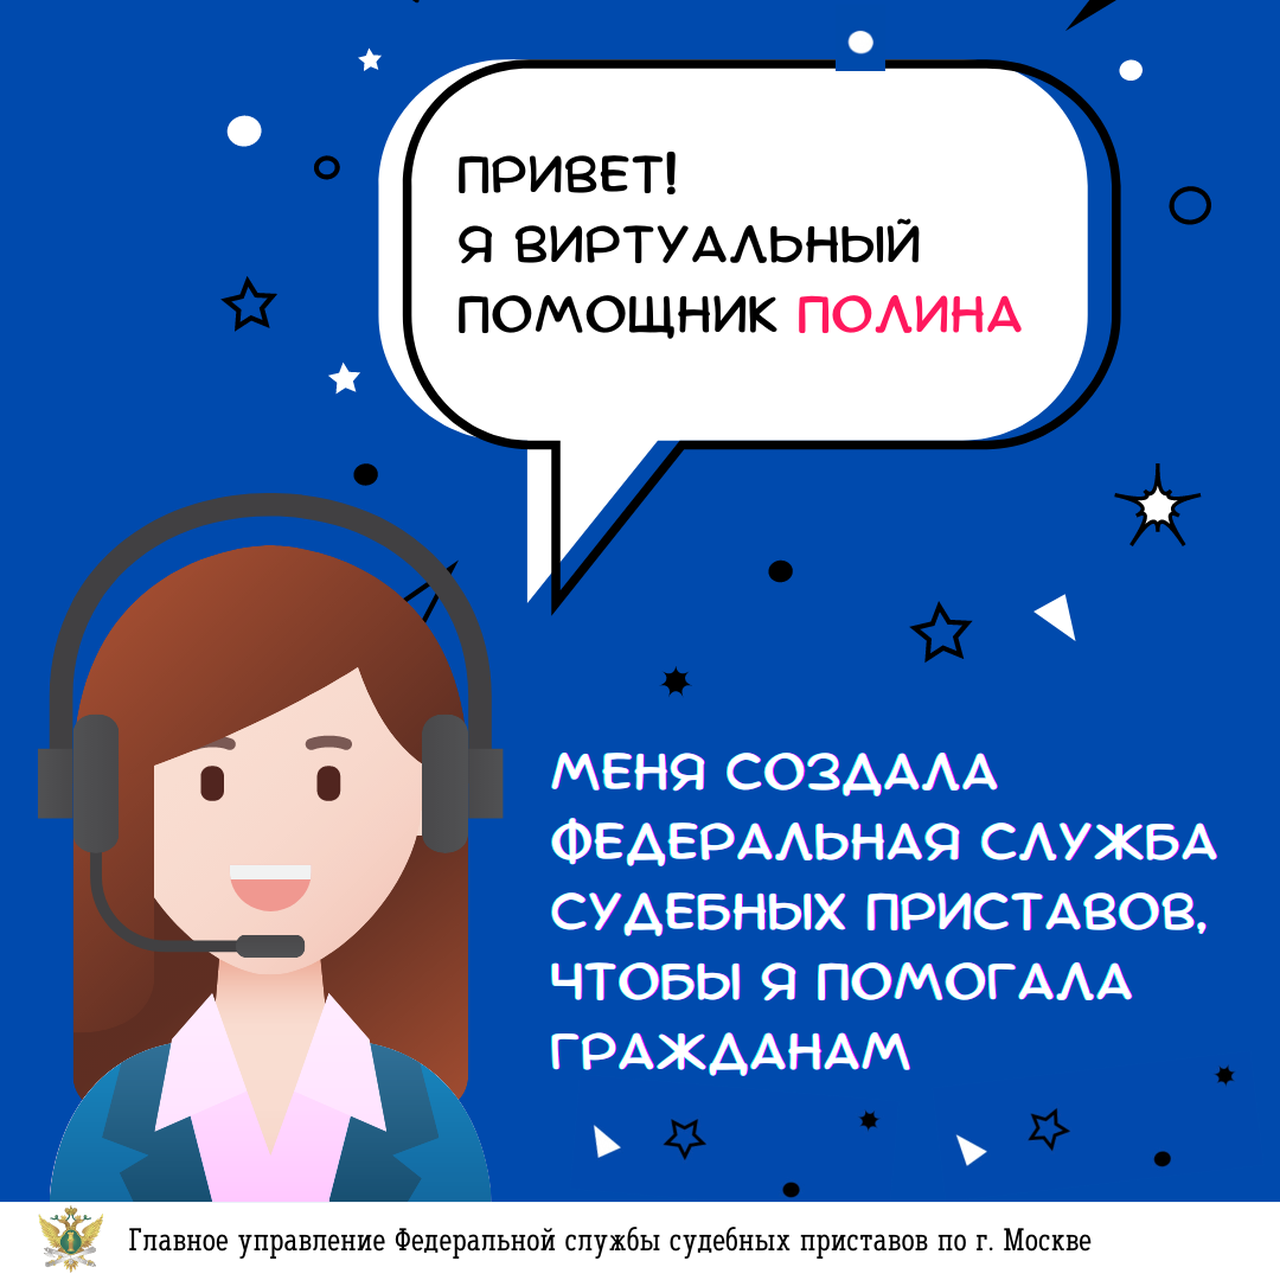 Виртуальный помощник Полина помогает гражданам